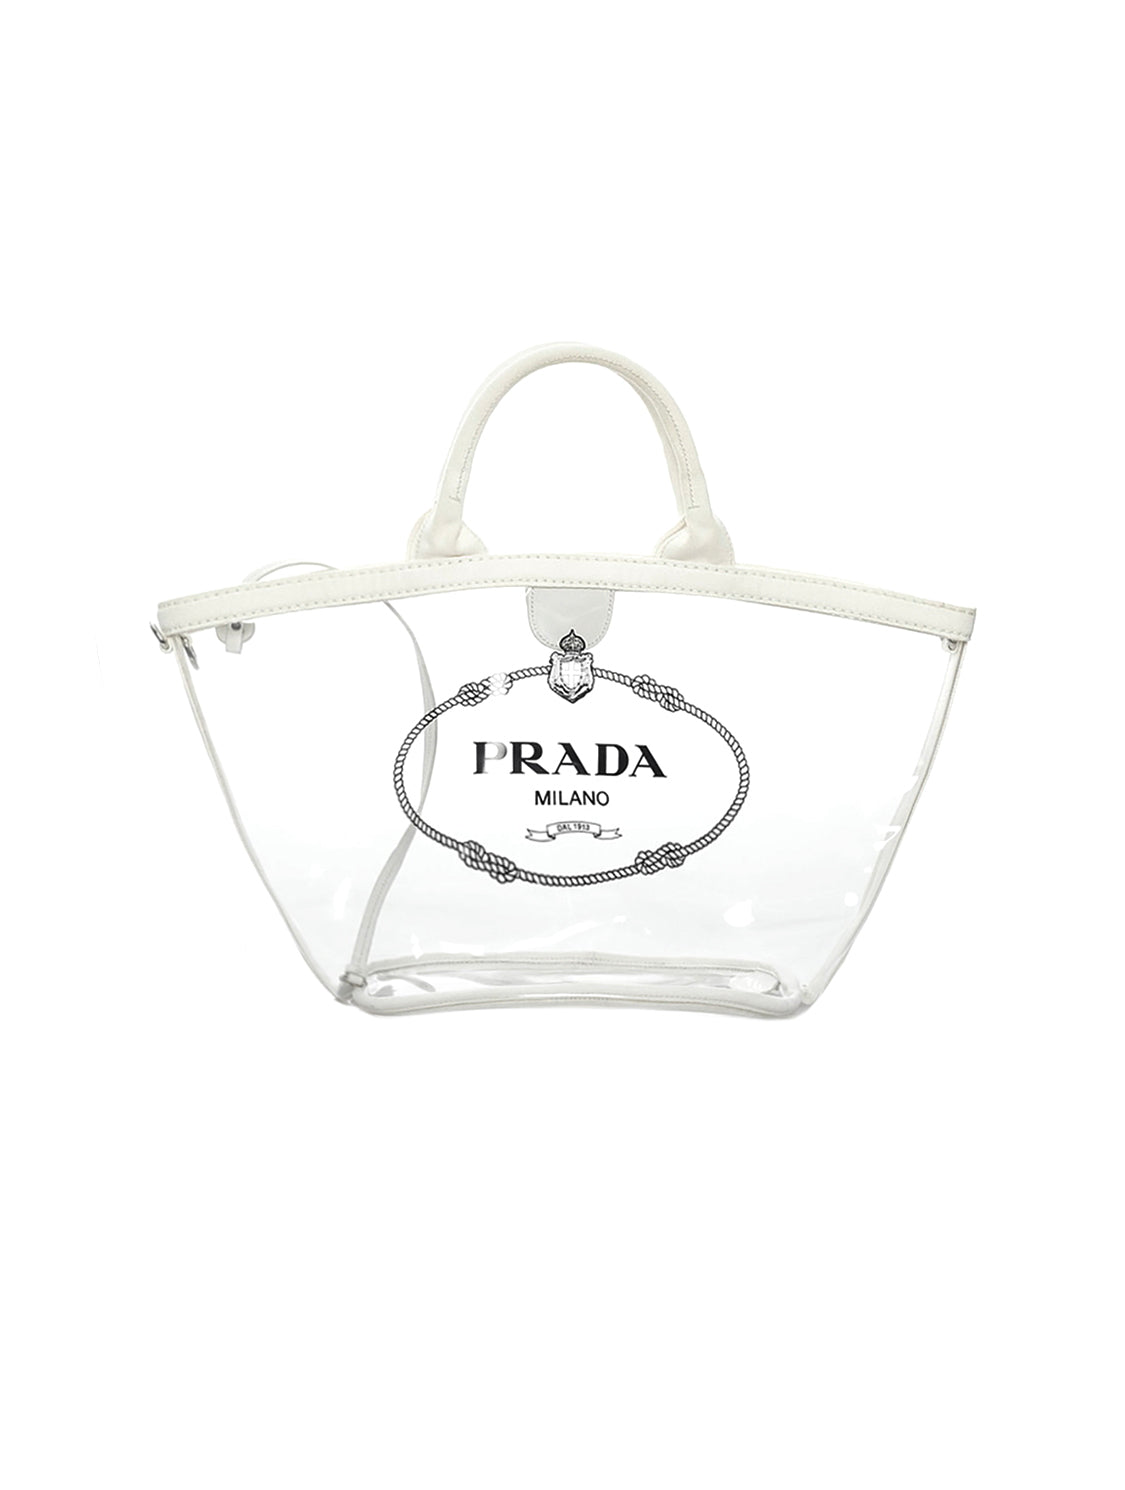 Prada Logo Clear Tote Bag in White